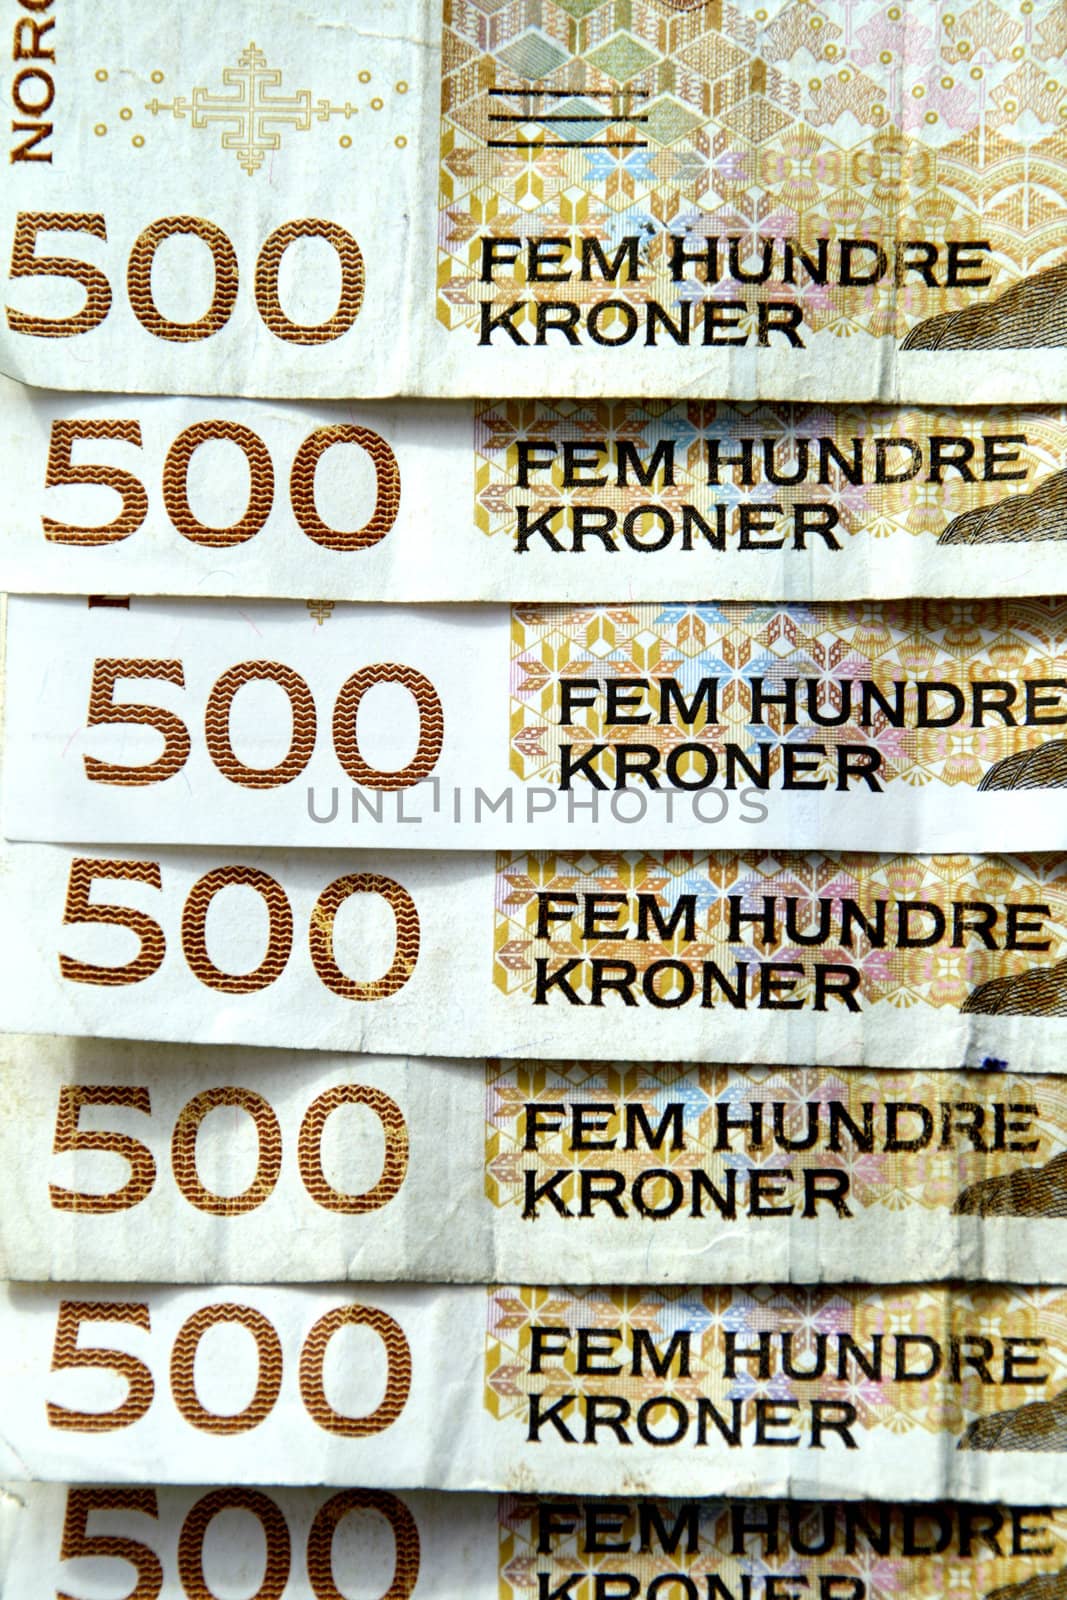 Norwegian money, 500 kroner bills